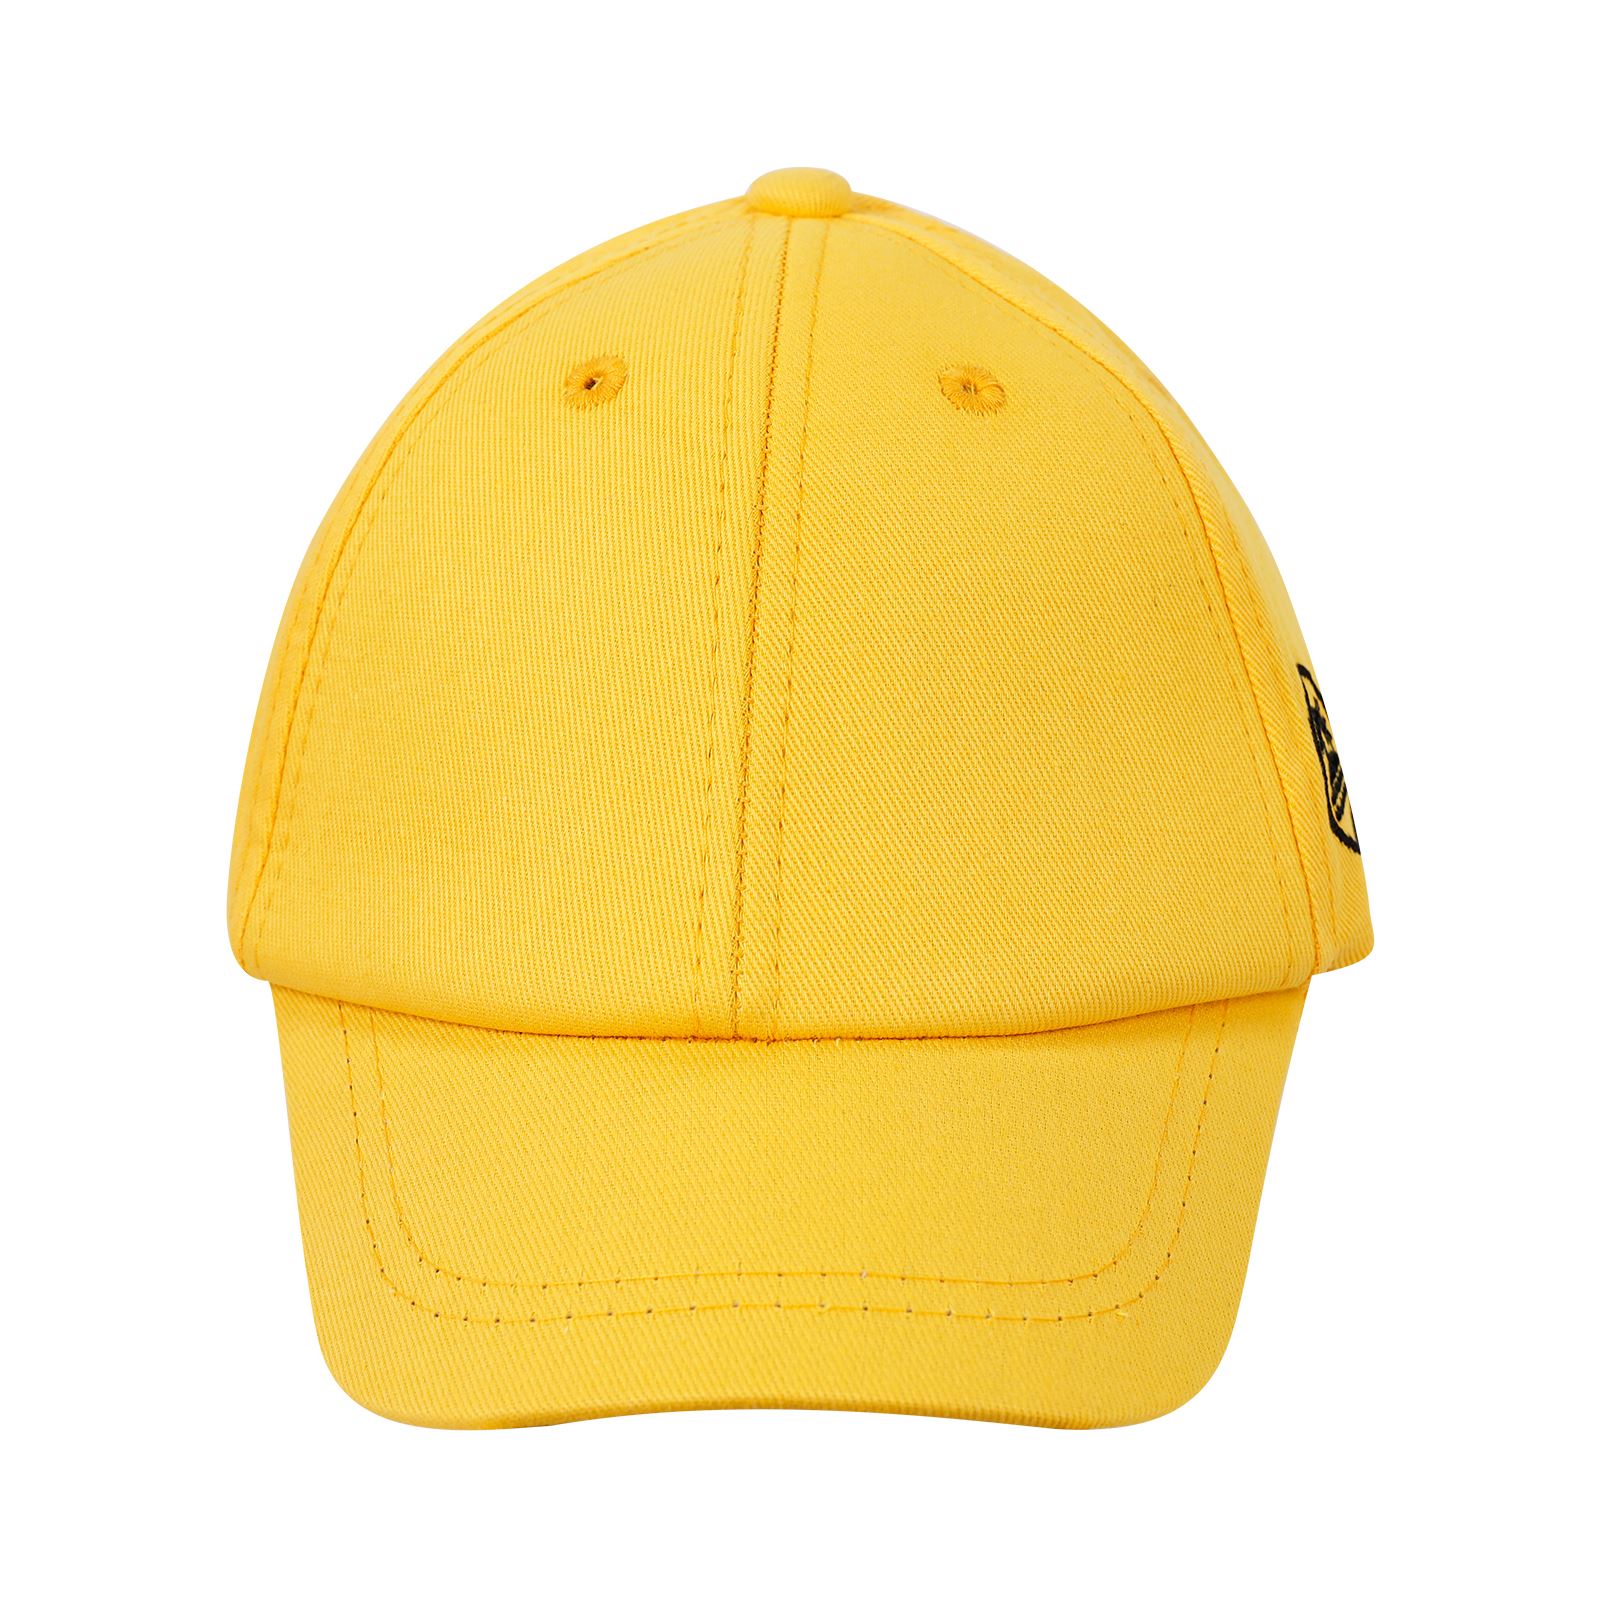 Civil Boys Erkek Çocuk Kep Şapka 2-5 Yaş Sarı